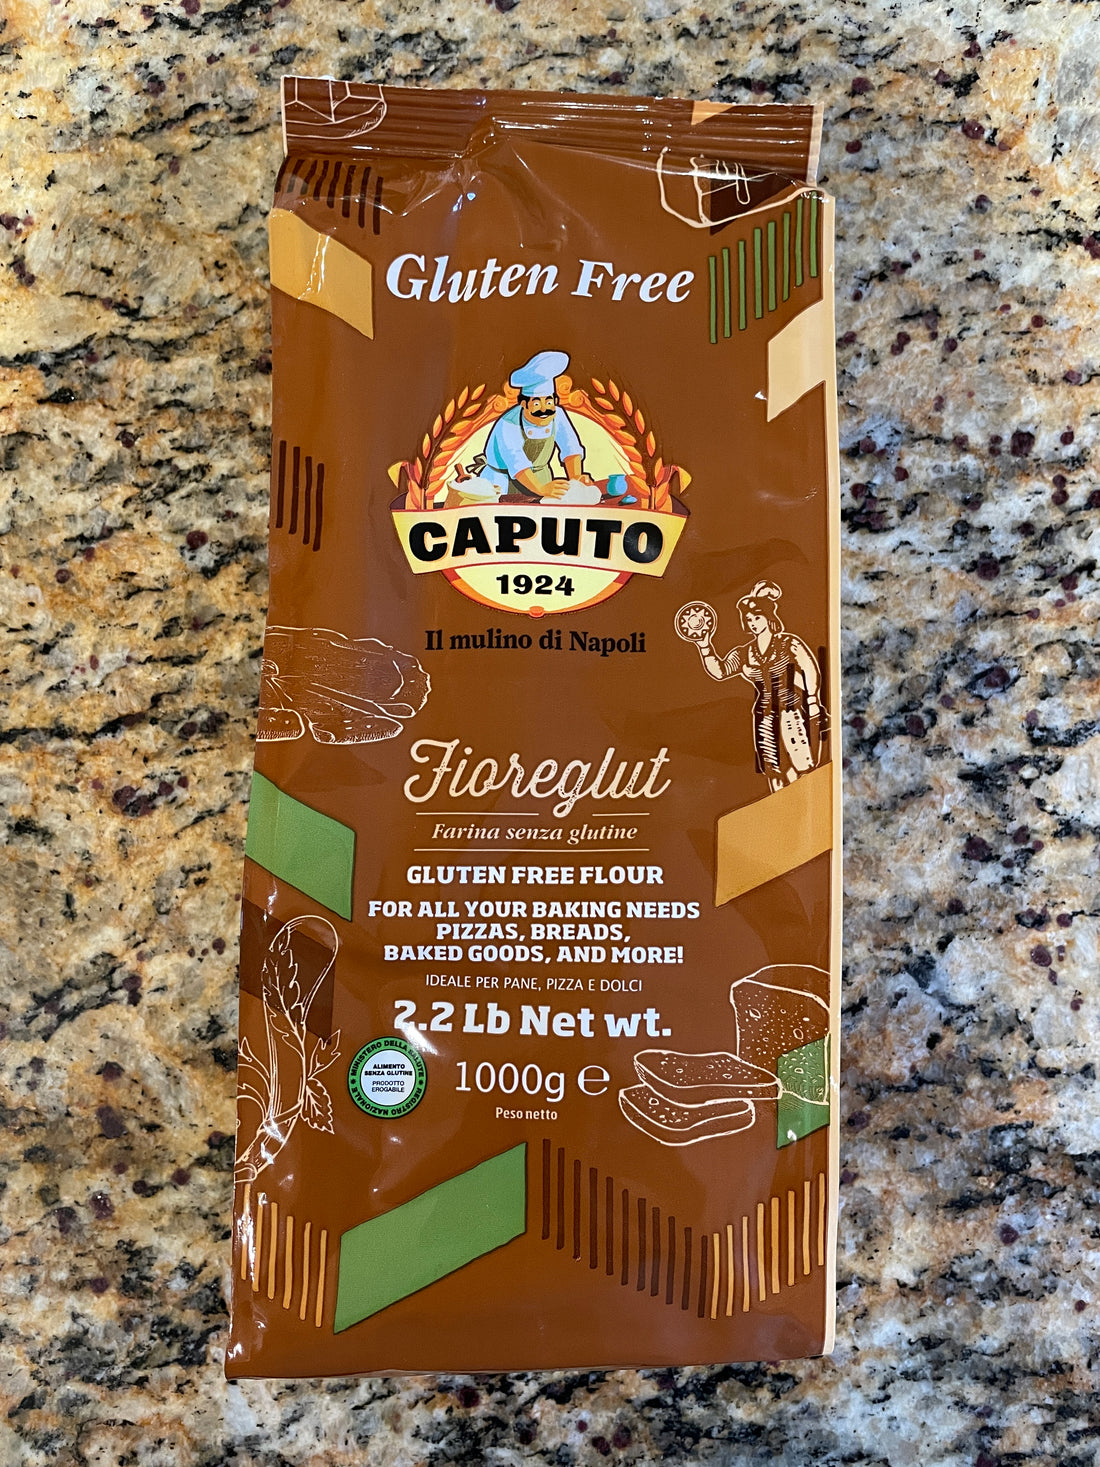 Caputo Fioreglut (Gluten Free Flour)